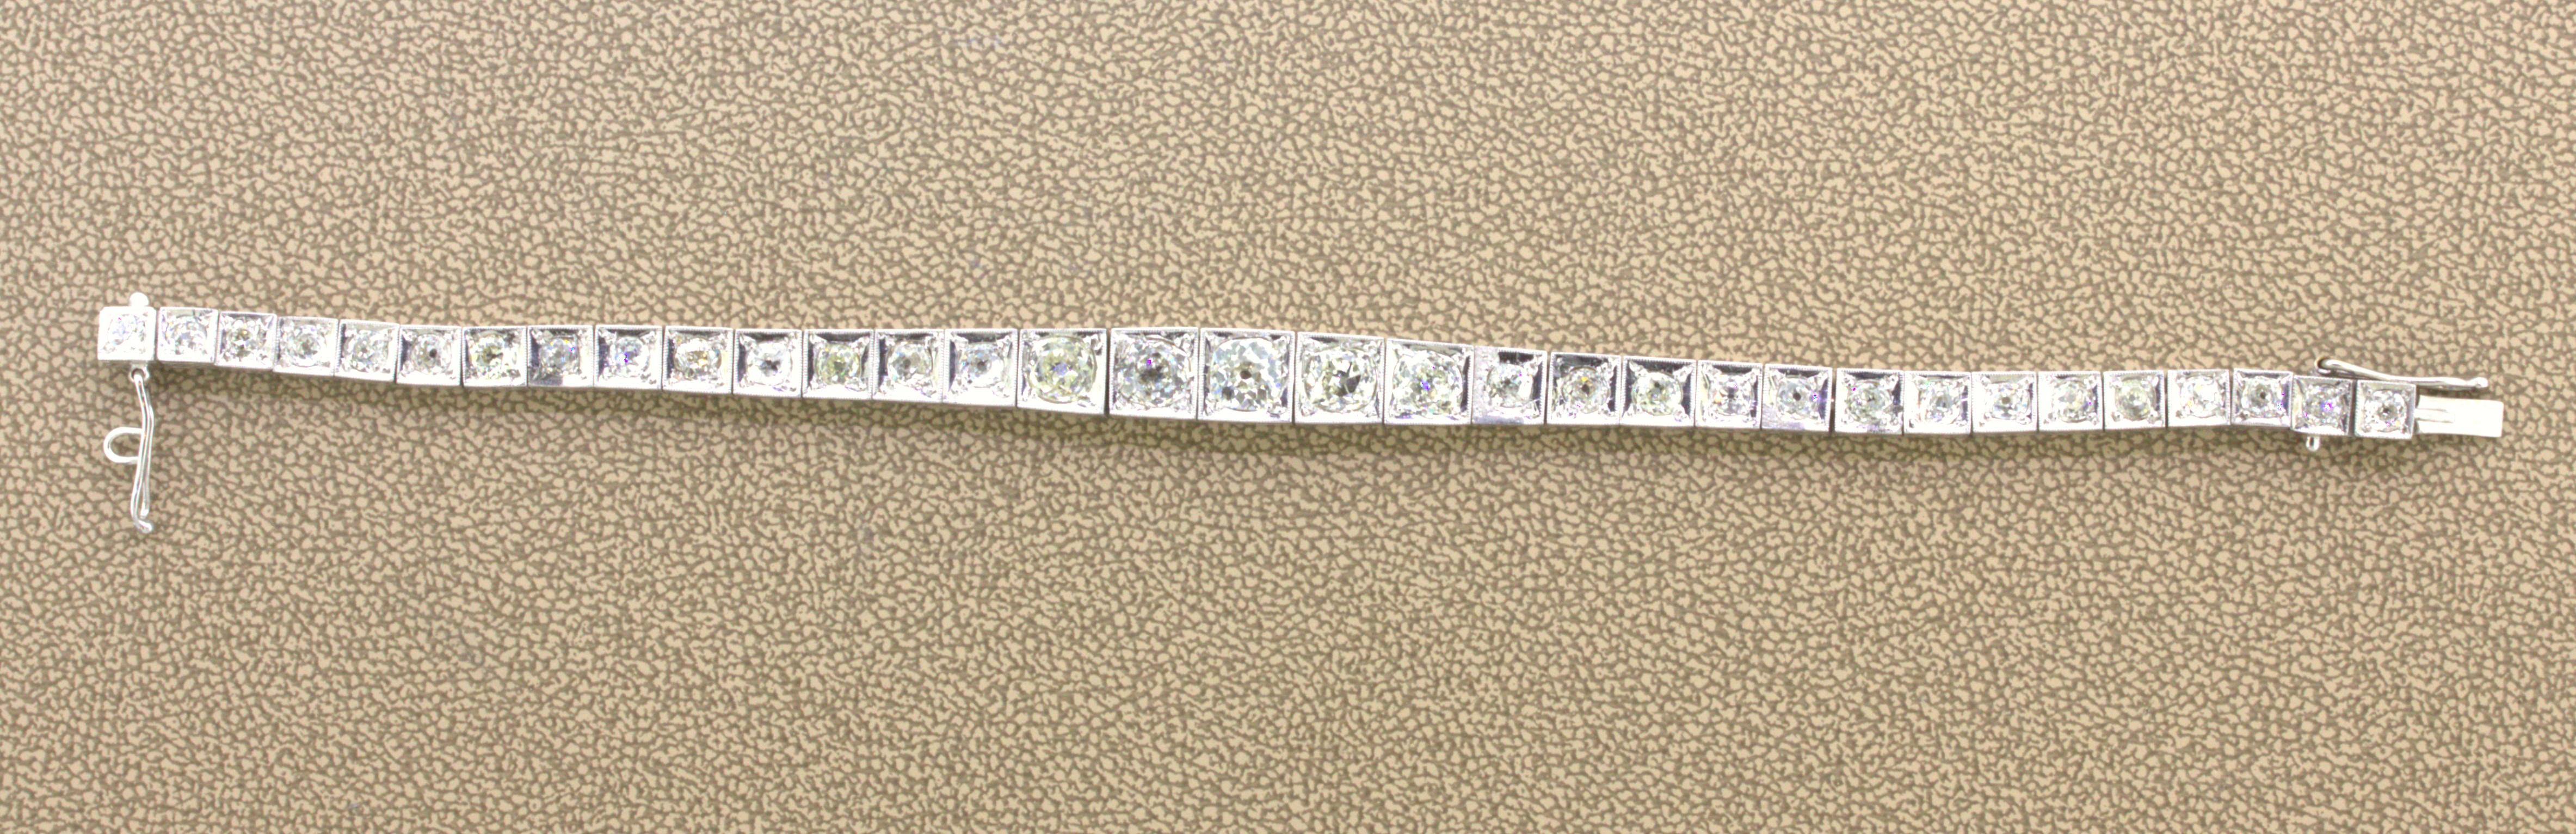 Bracelet de tennis Art déco en platine et diamants

Un bracelet de tennis en diamants de style Art déco, réalisé dans les années 1930. Il présente une rangée de diamants de taille ancienne pesant au total environ 7,00 carats, le plus gros diamant